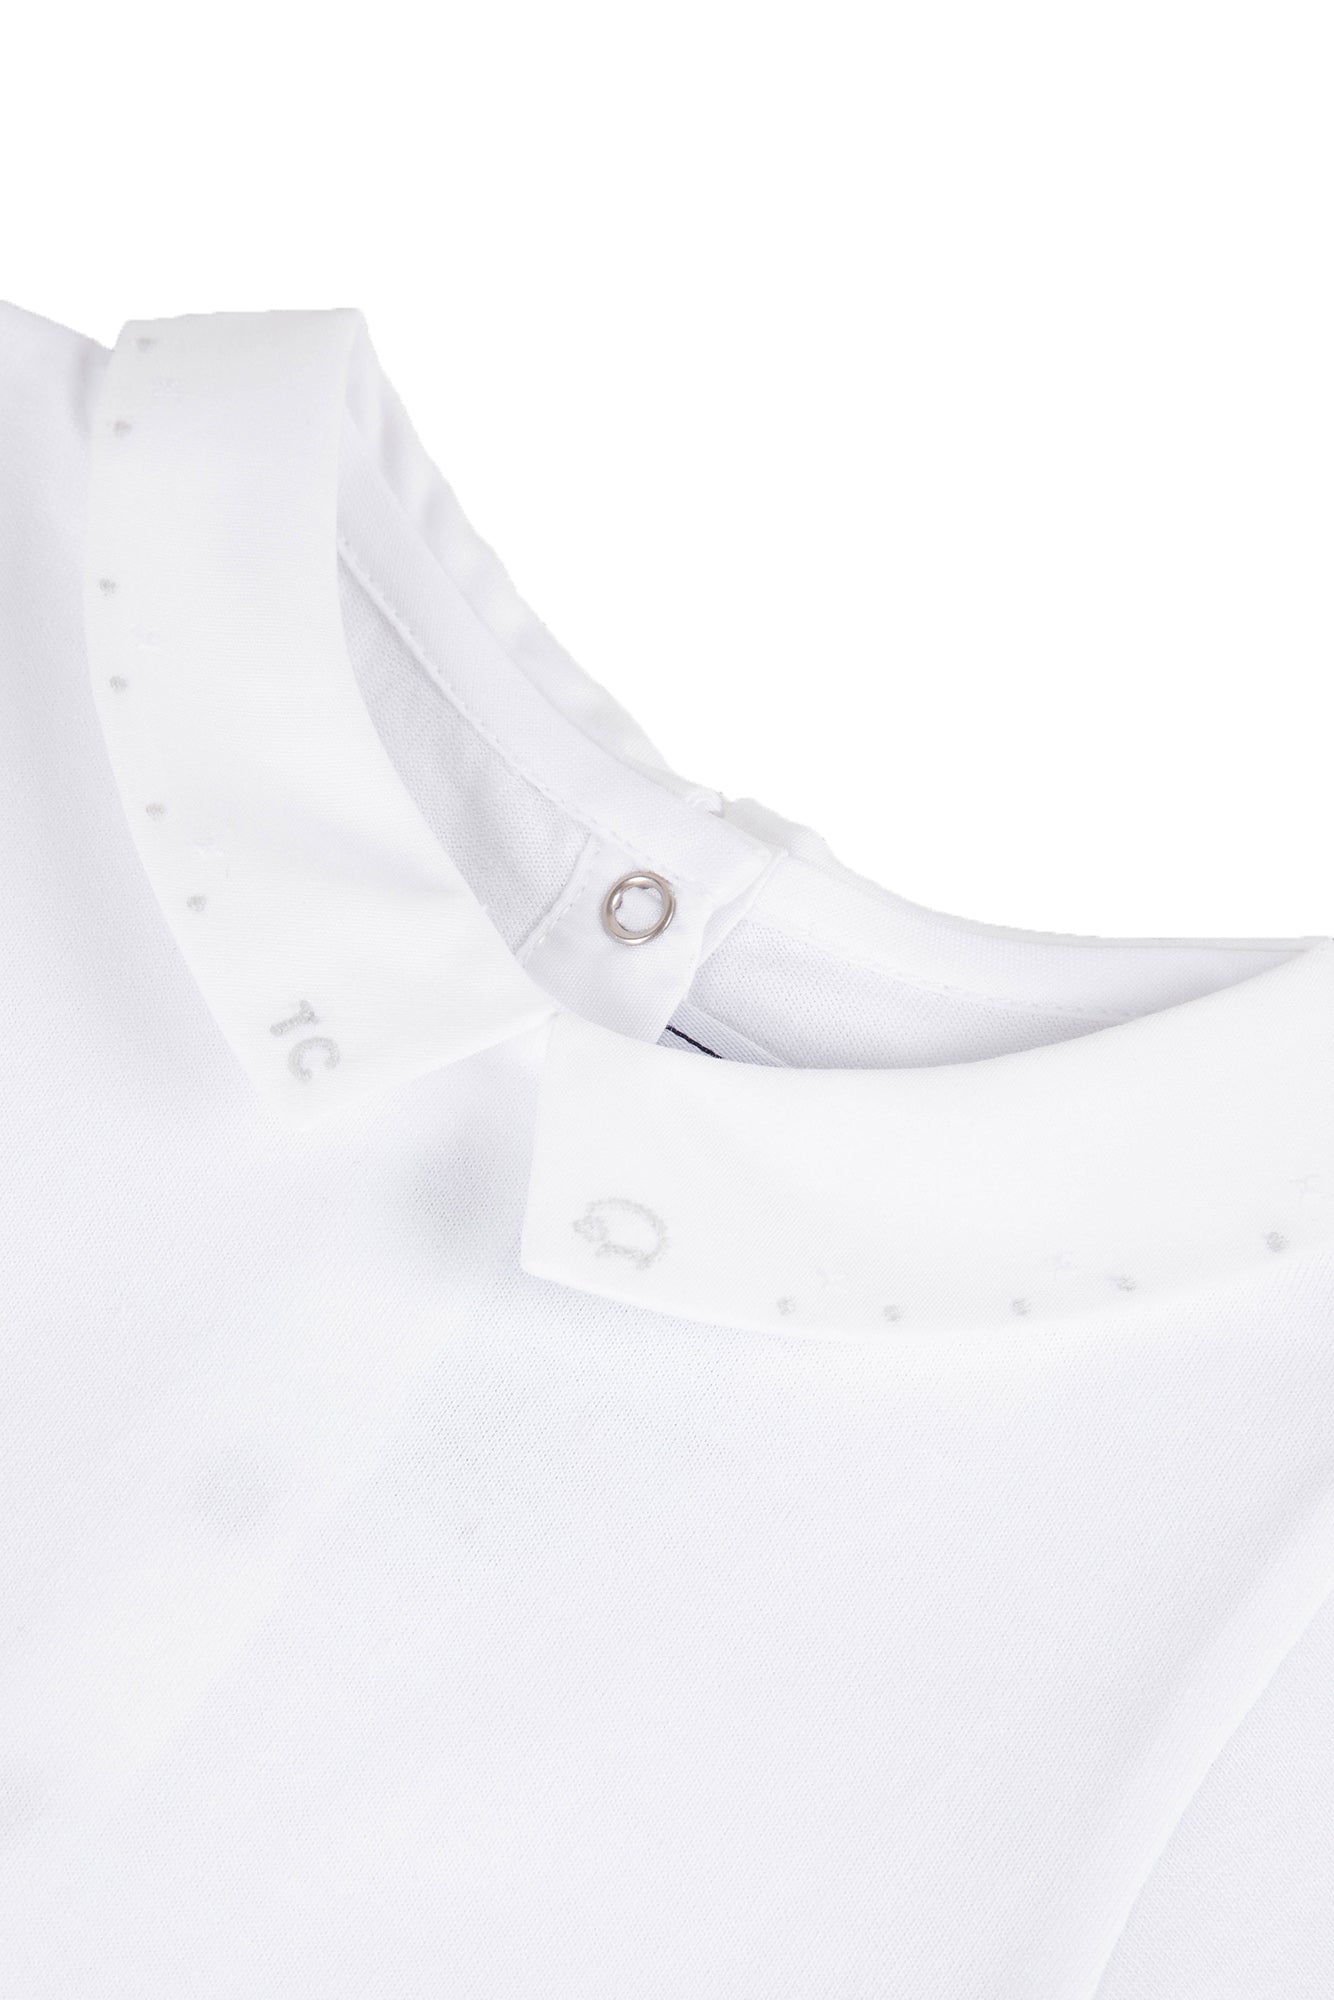 Body - White Pointed Collar White / 9M